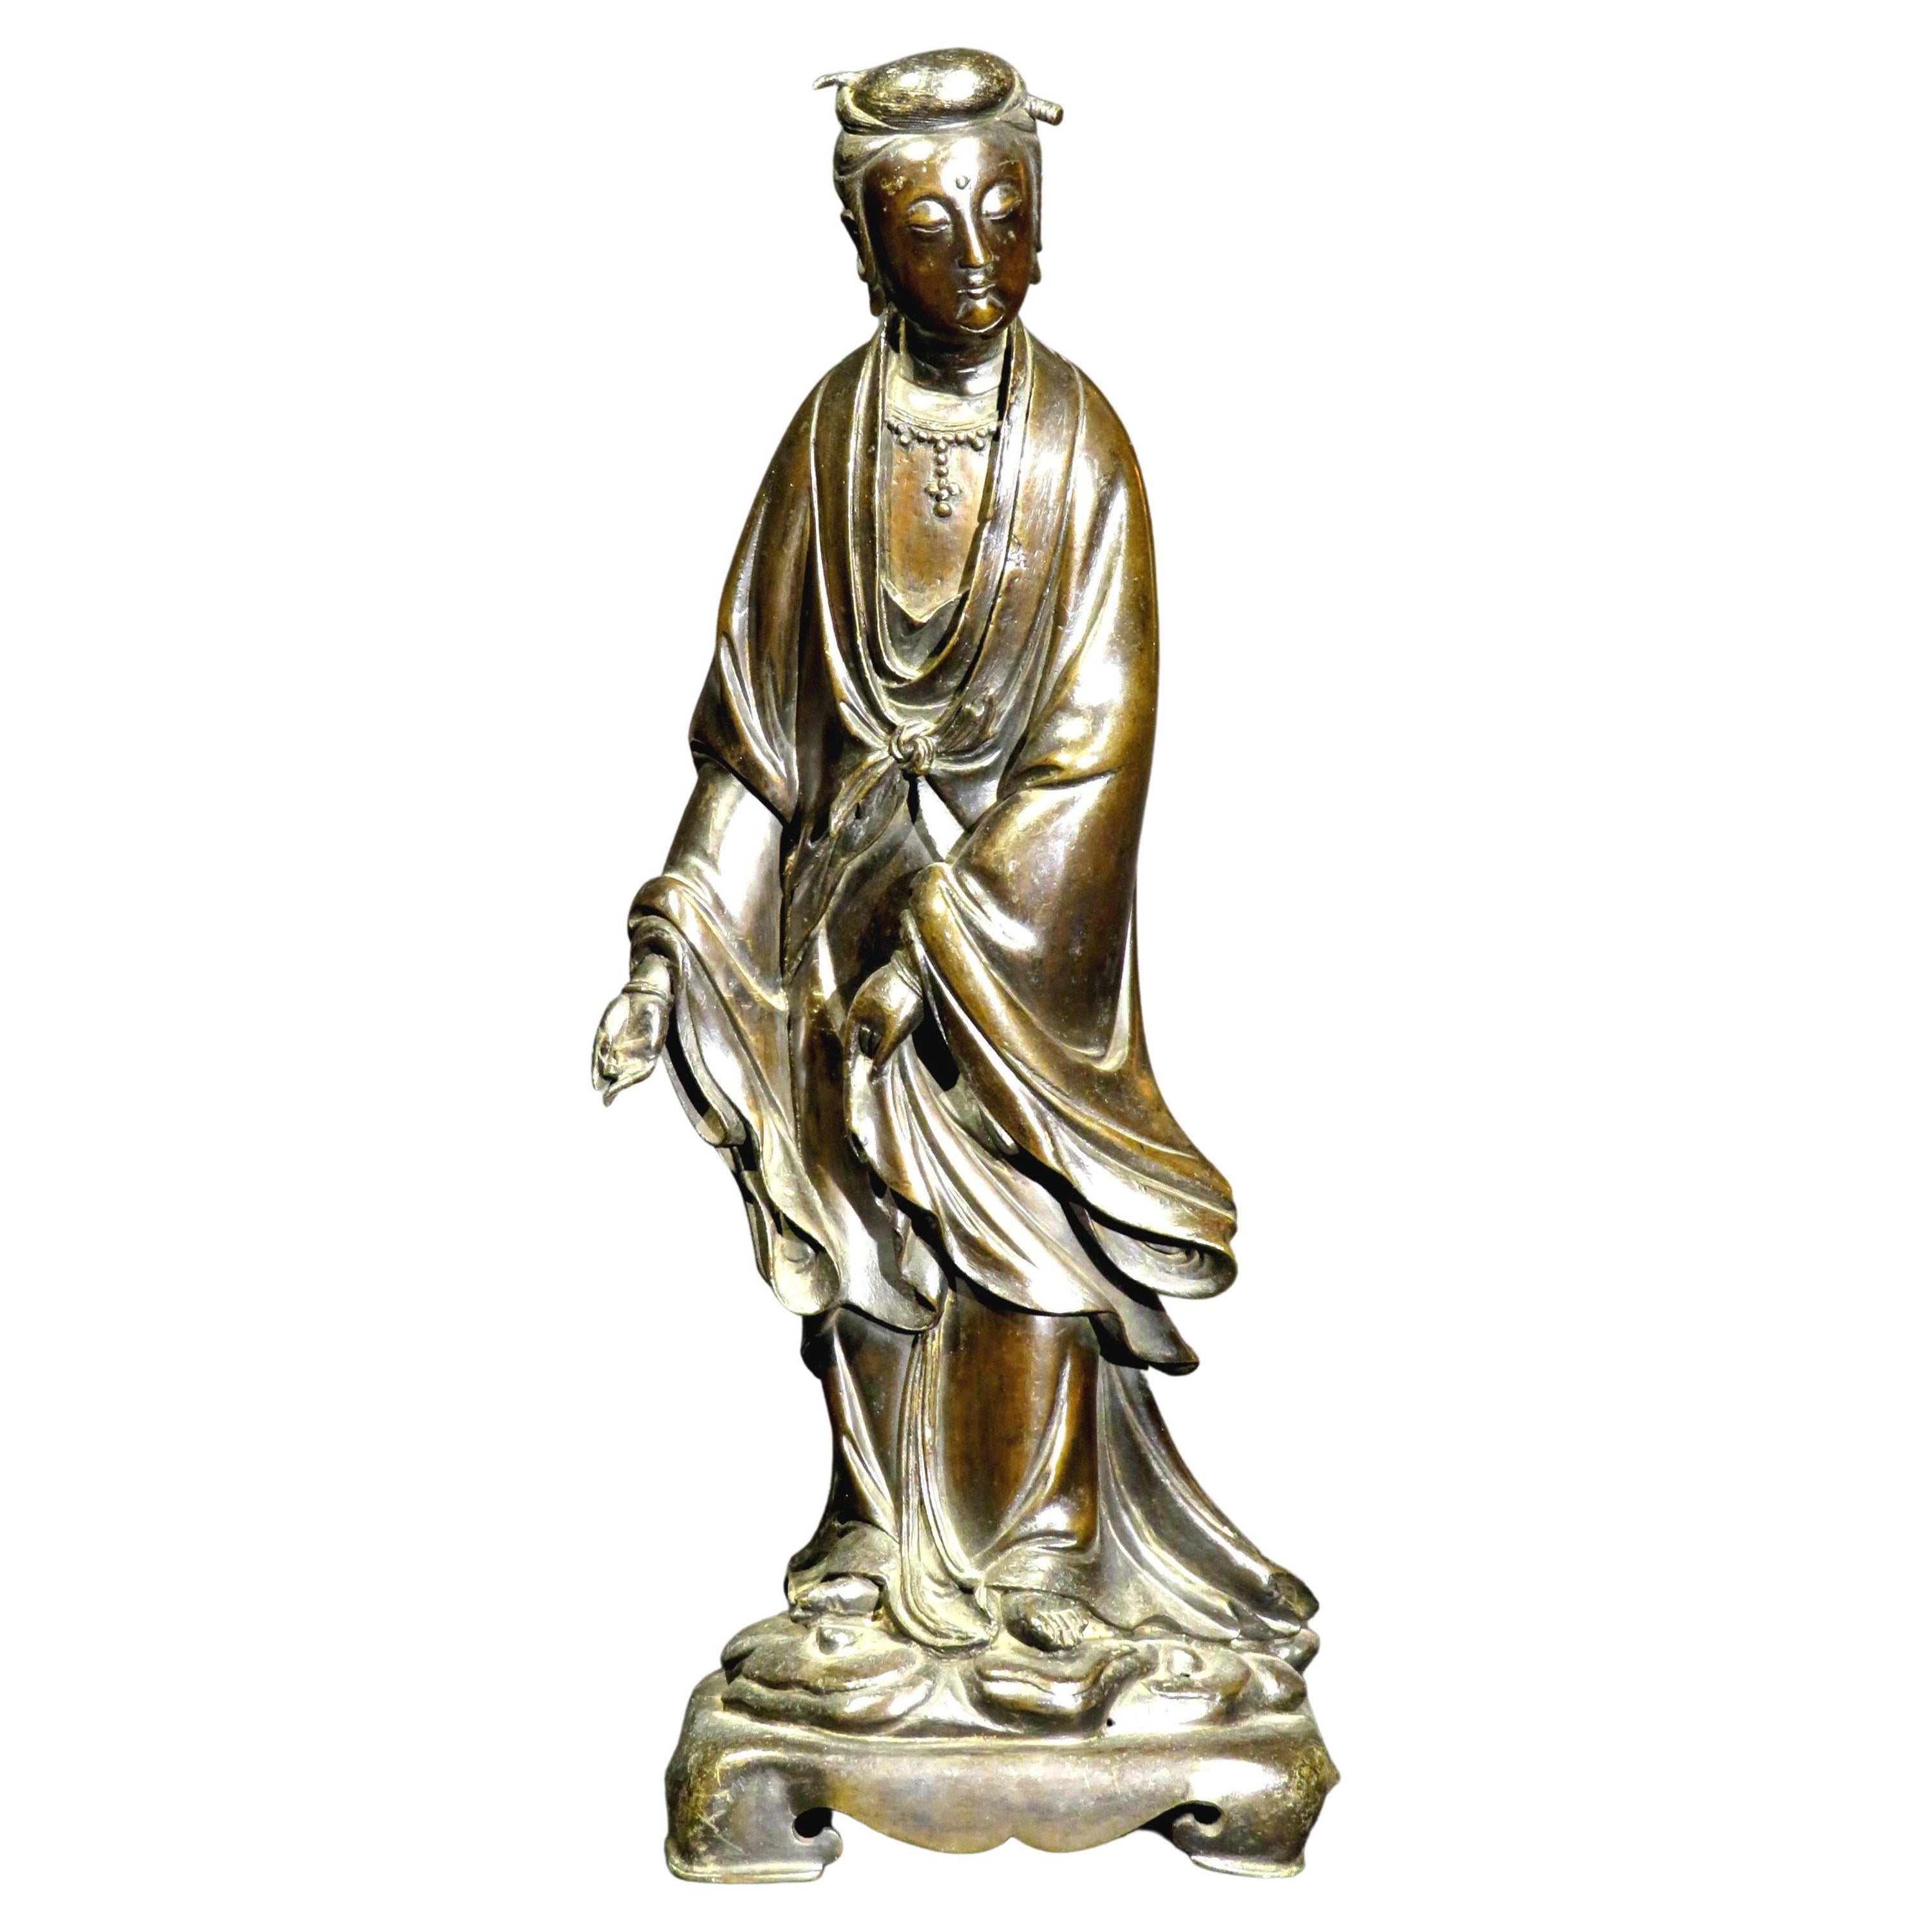 Fein gegossene und patinierte stehende Bronzefigur von Guanyin aus dem 18. / 19. Jahrhundert